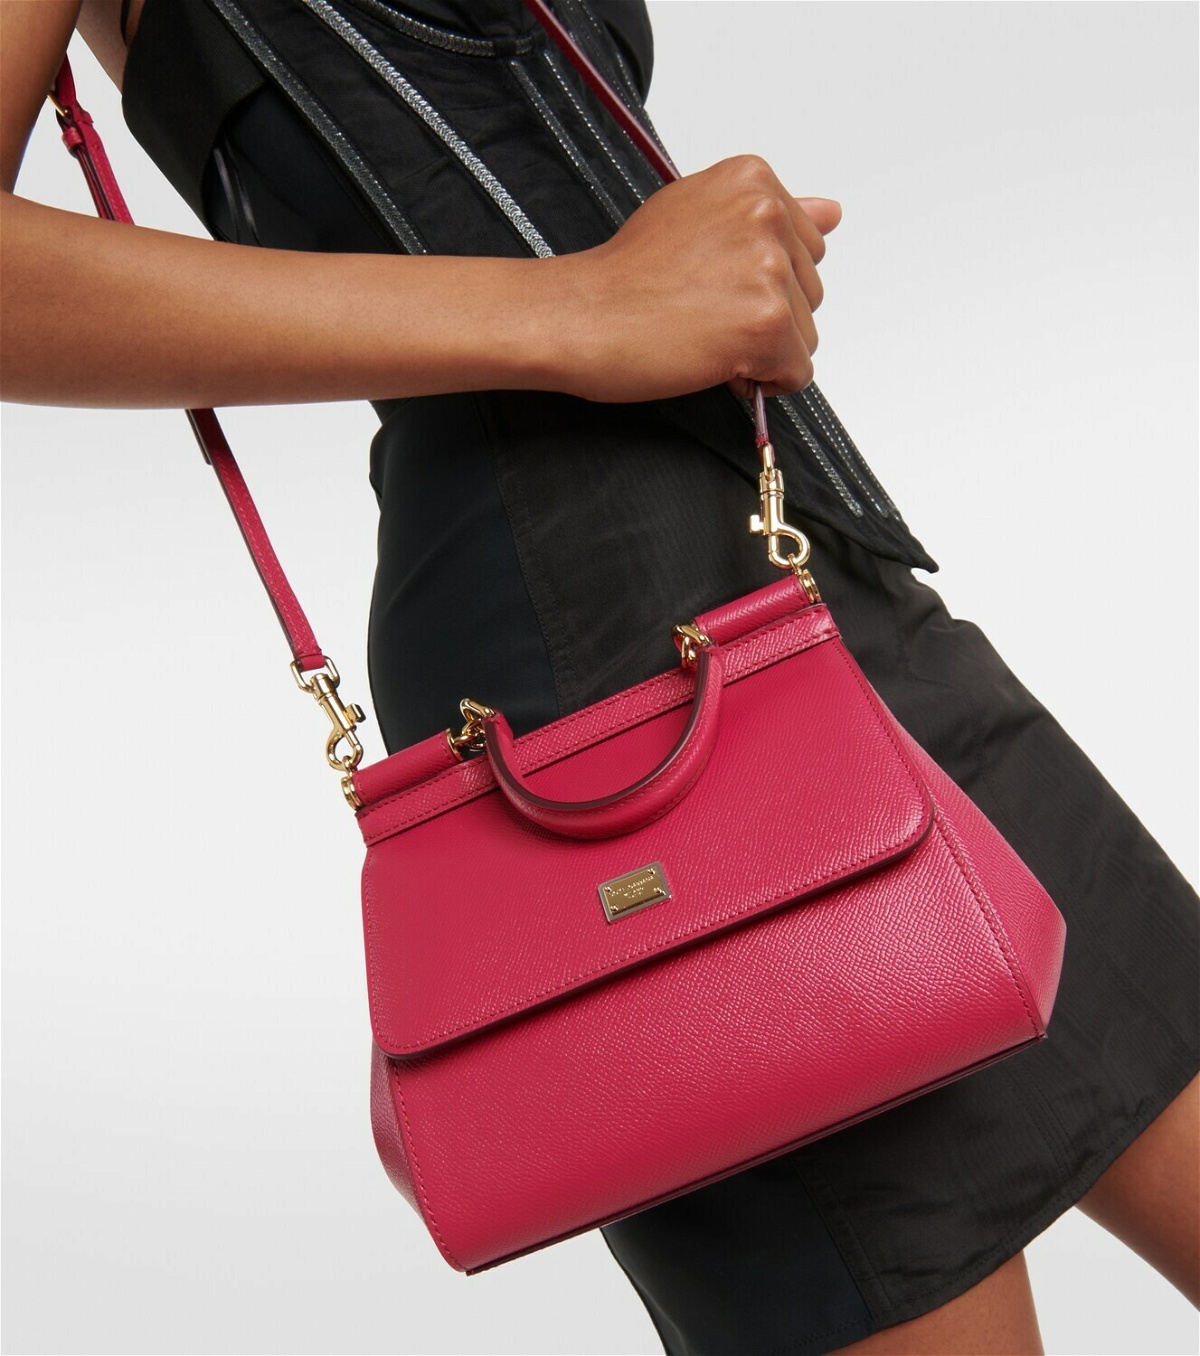 Dolce&Gabbana x Kim Sicily Small leather shoulder bag Dolce & Gabbana